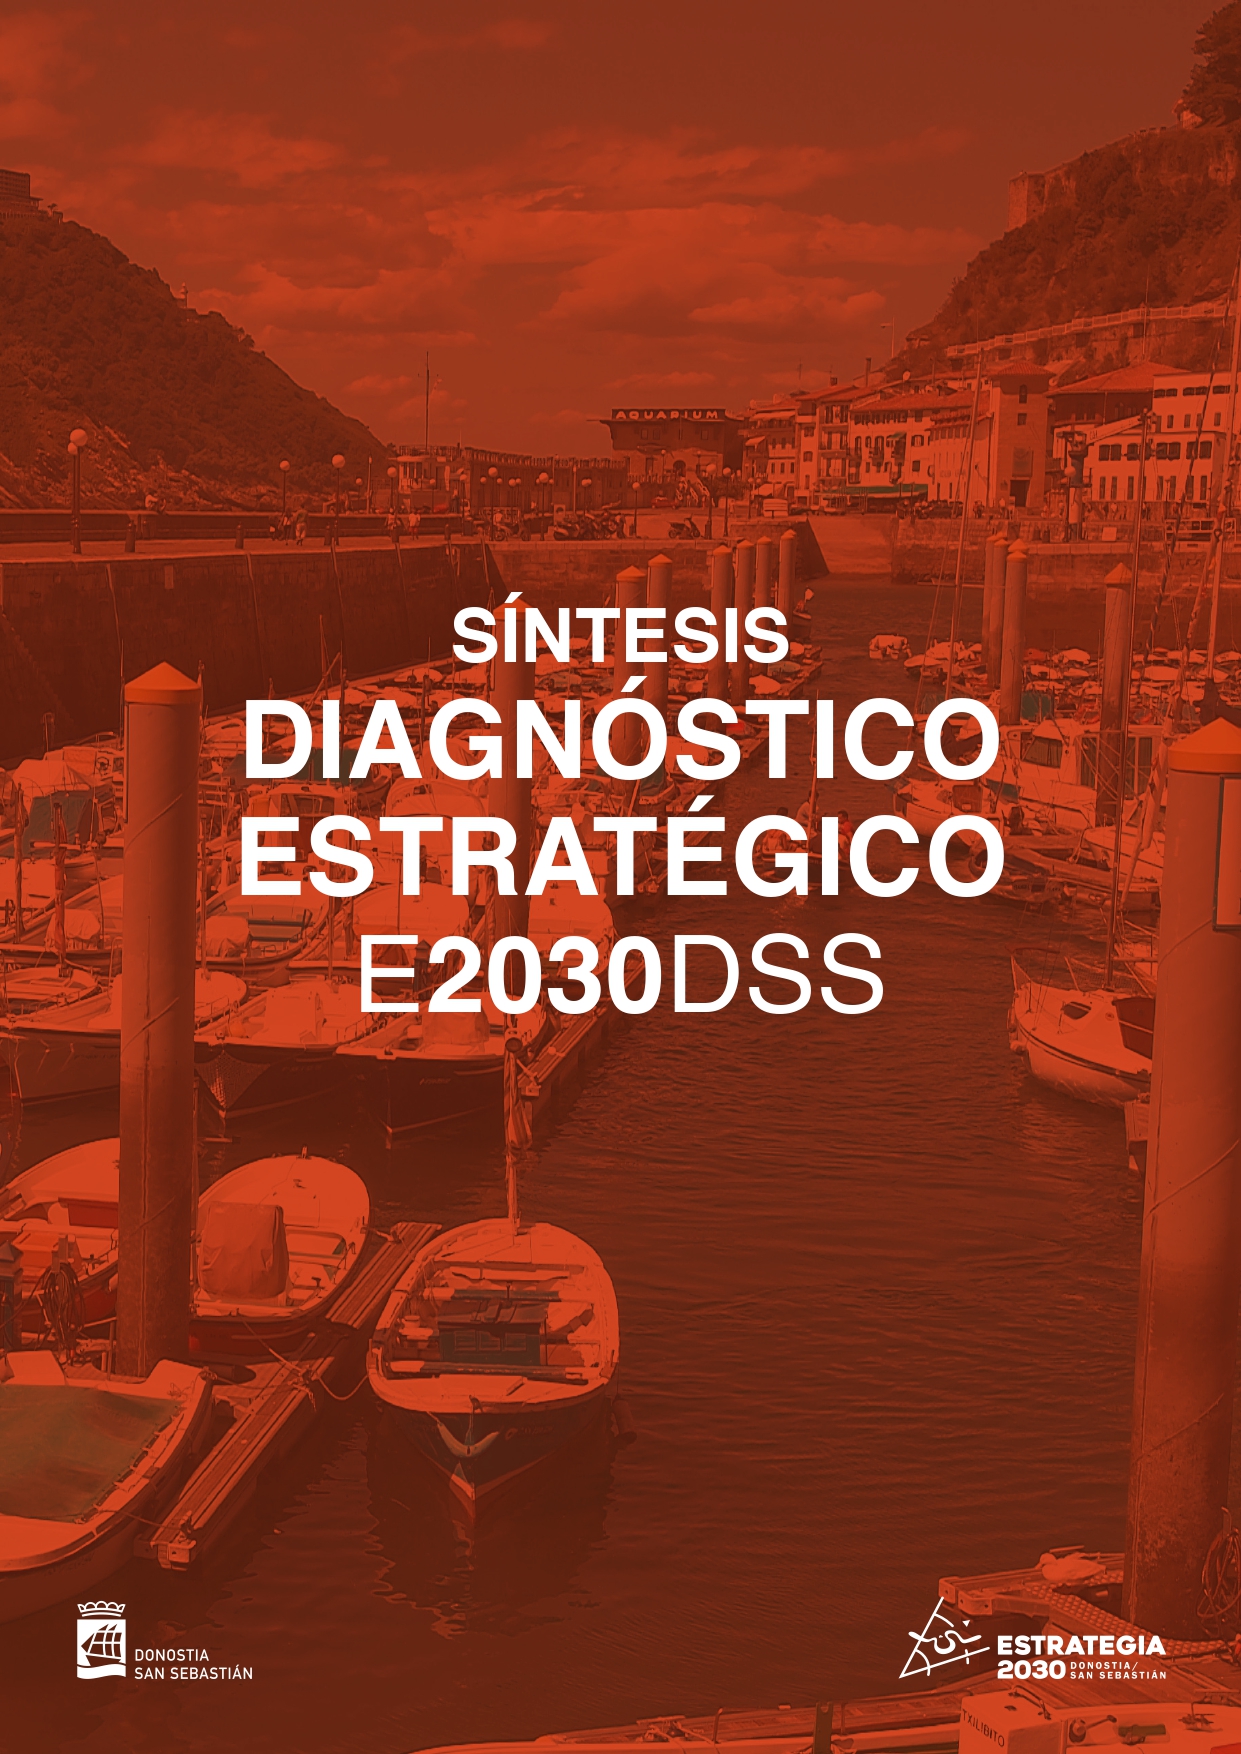 Síntesis Diagnóstico Estratégico E2030DSS